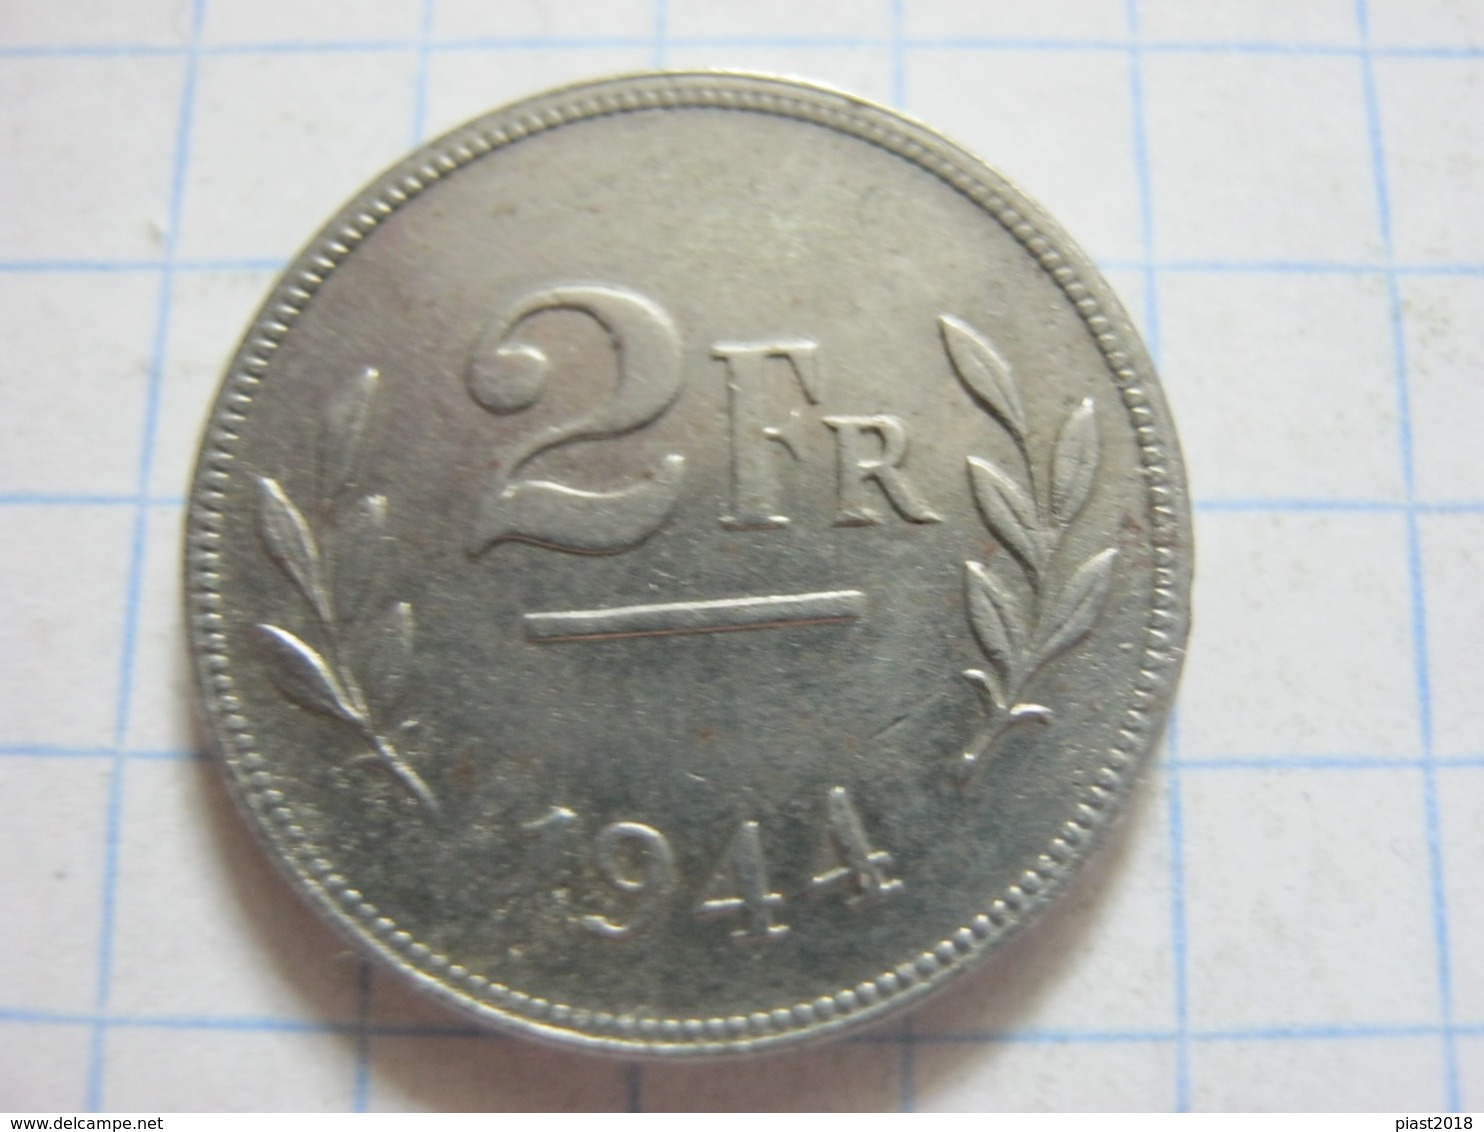 2 Francs 1944 - 2 Francs (1944 Liberation)